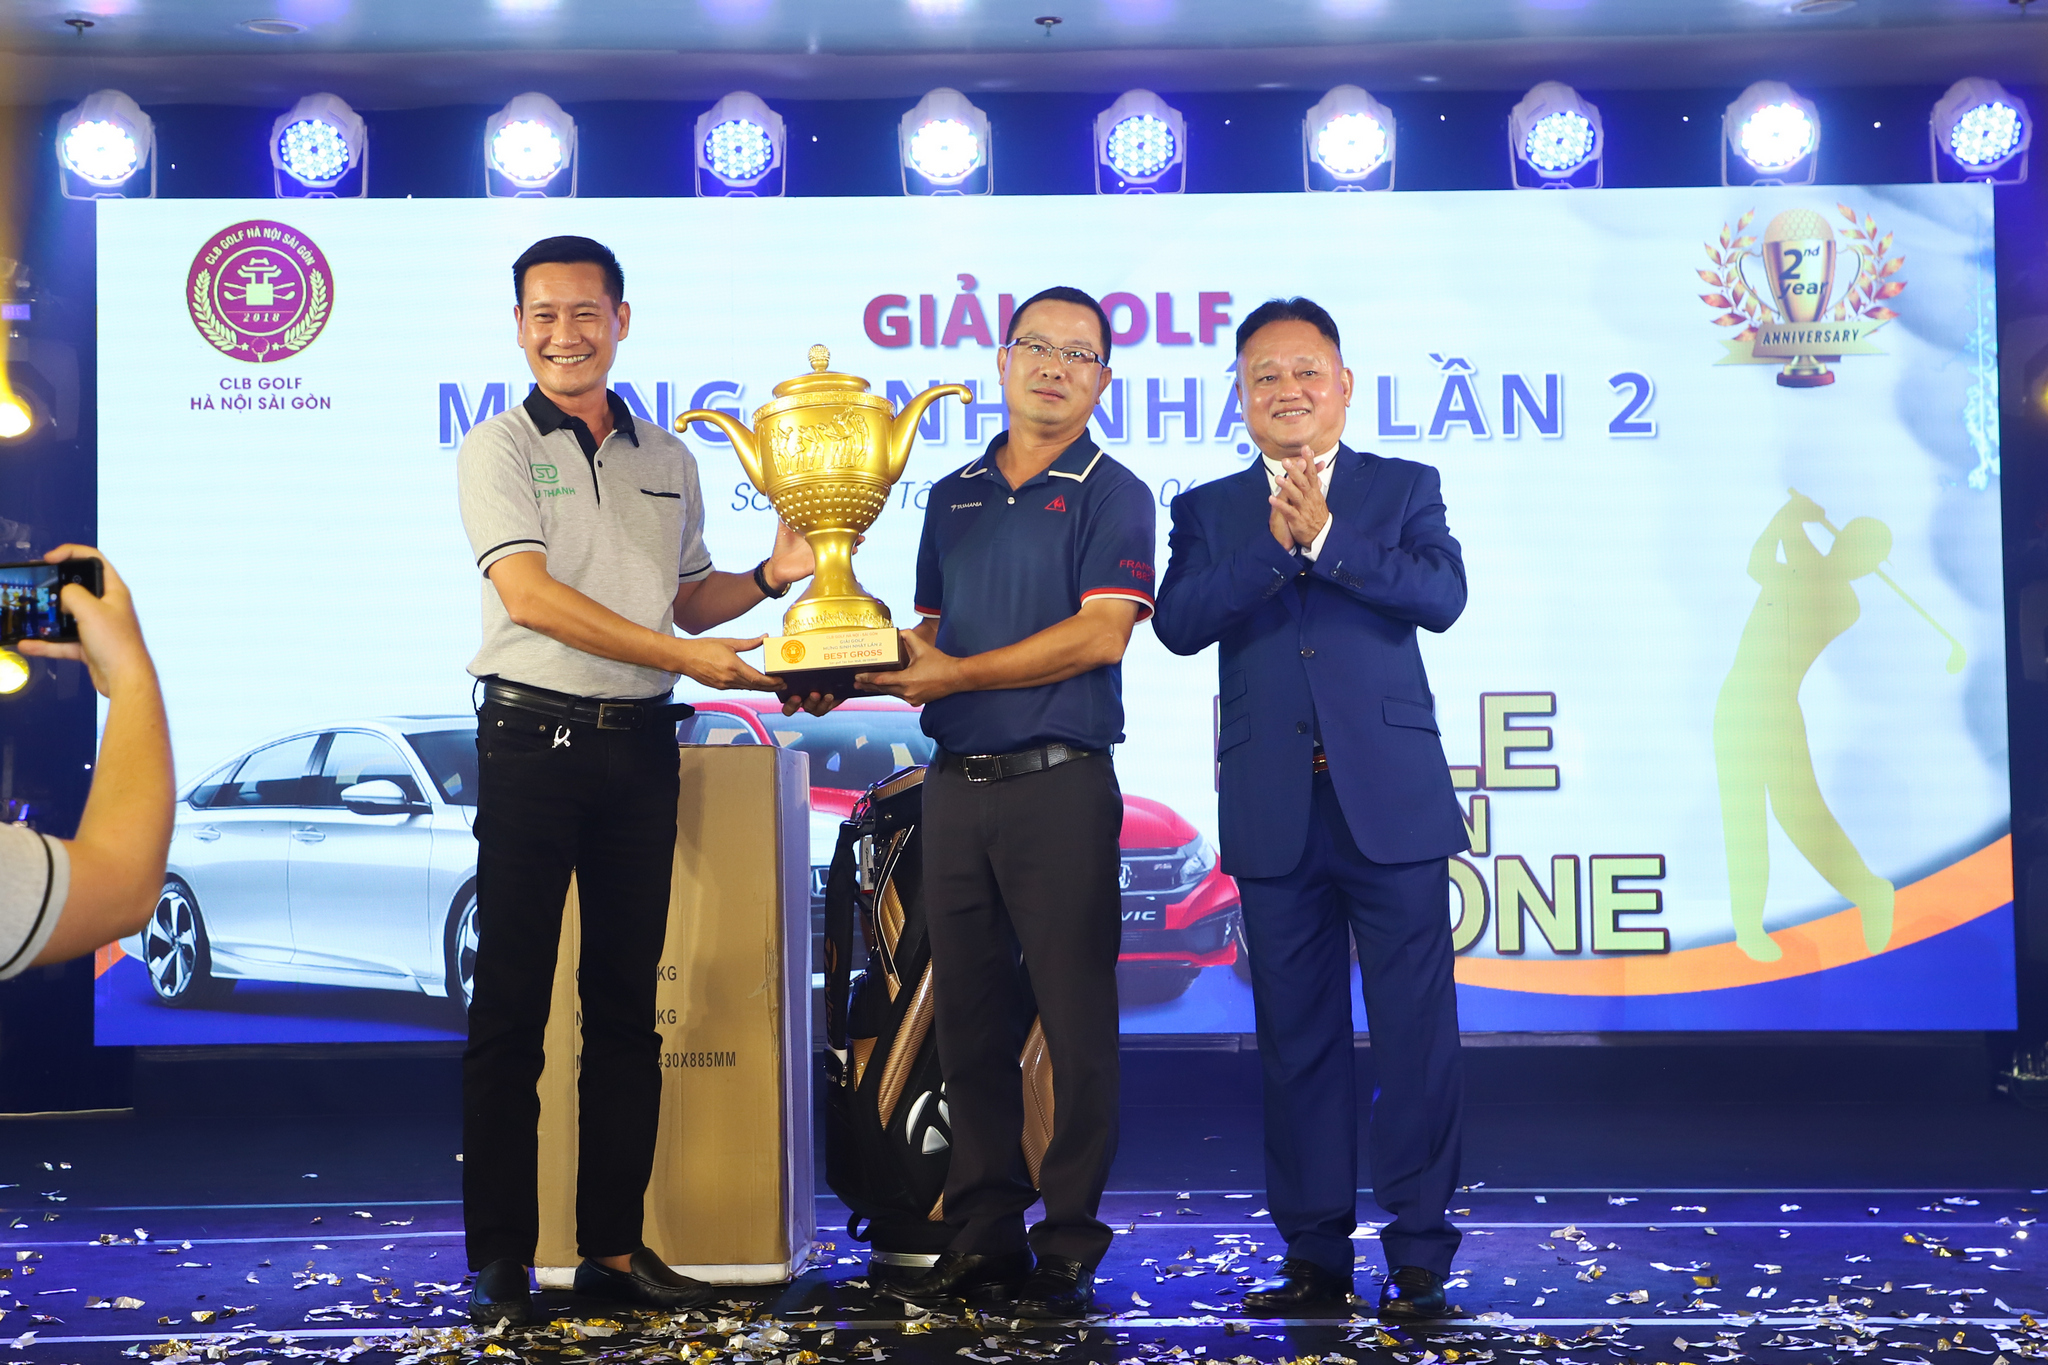 Golfer Nguyễn Duy Ngọc vô địch Giải golf mừng sinh nhật lần 2 CLB Hà Nội - Sài Gòn